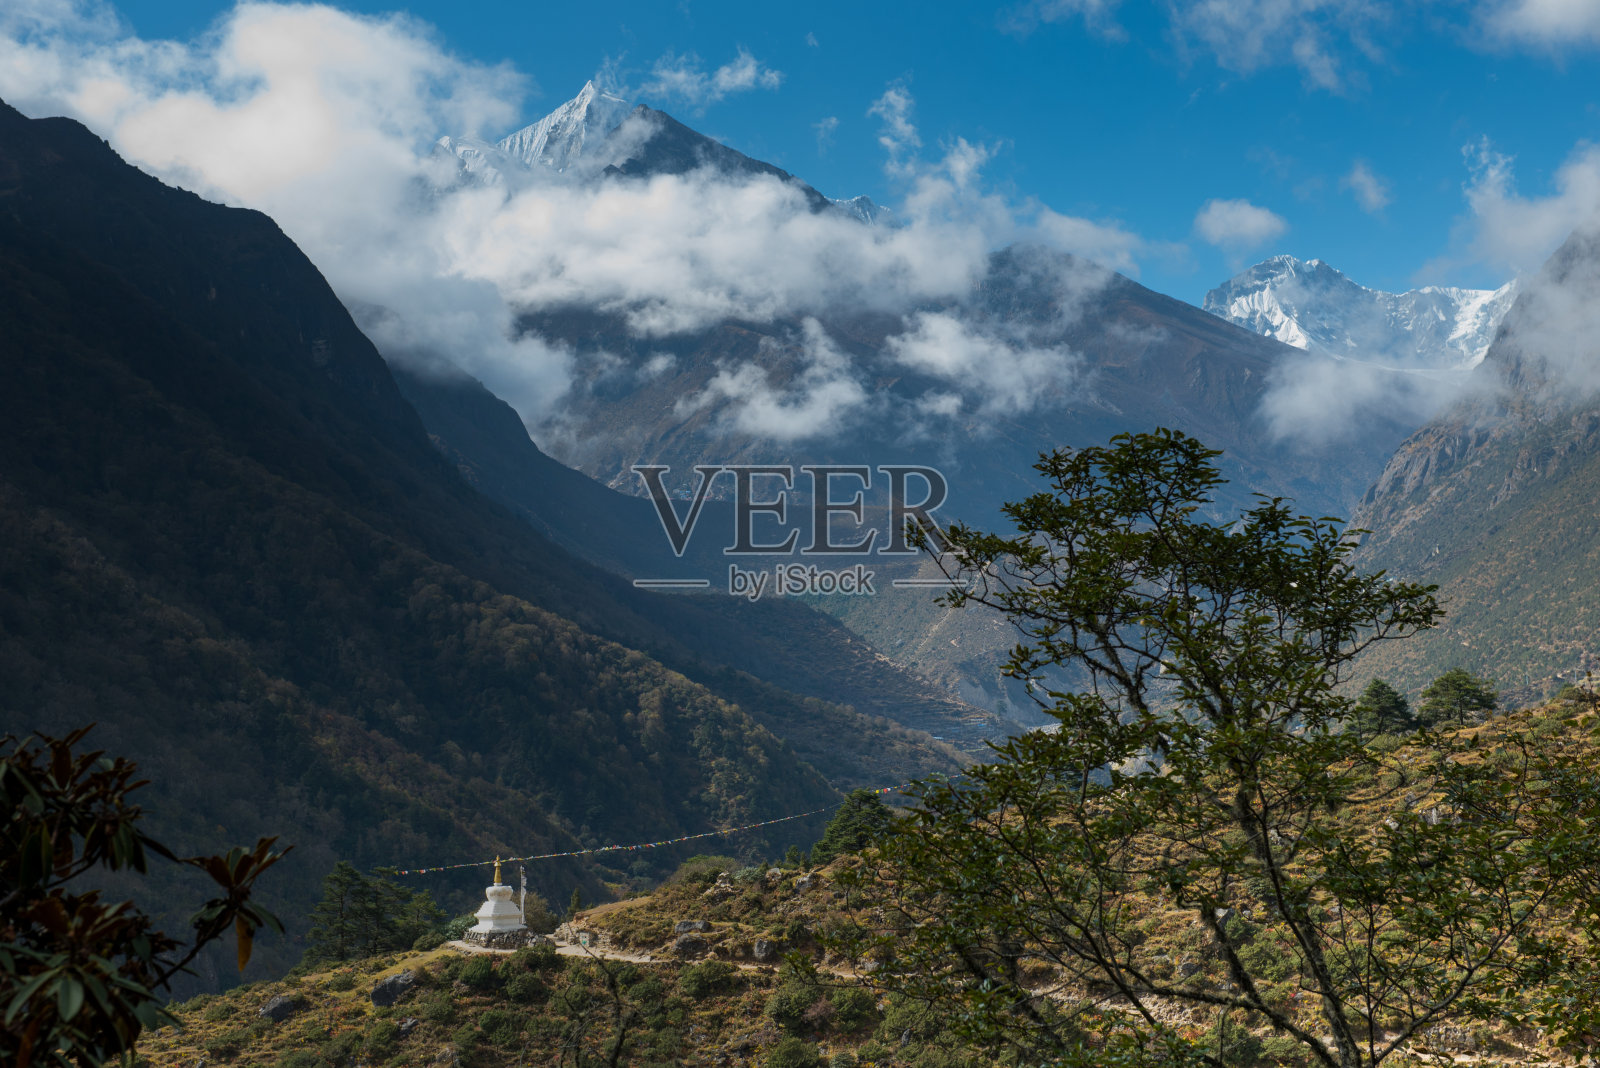 在通往尼泊尔喜马拉雅山珠穆朗玛峰大本营的路上照片摄影图片